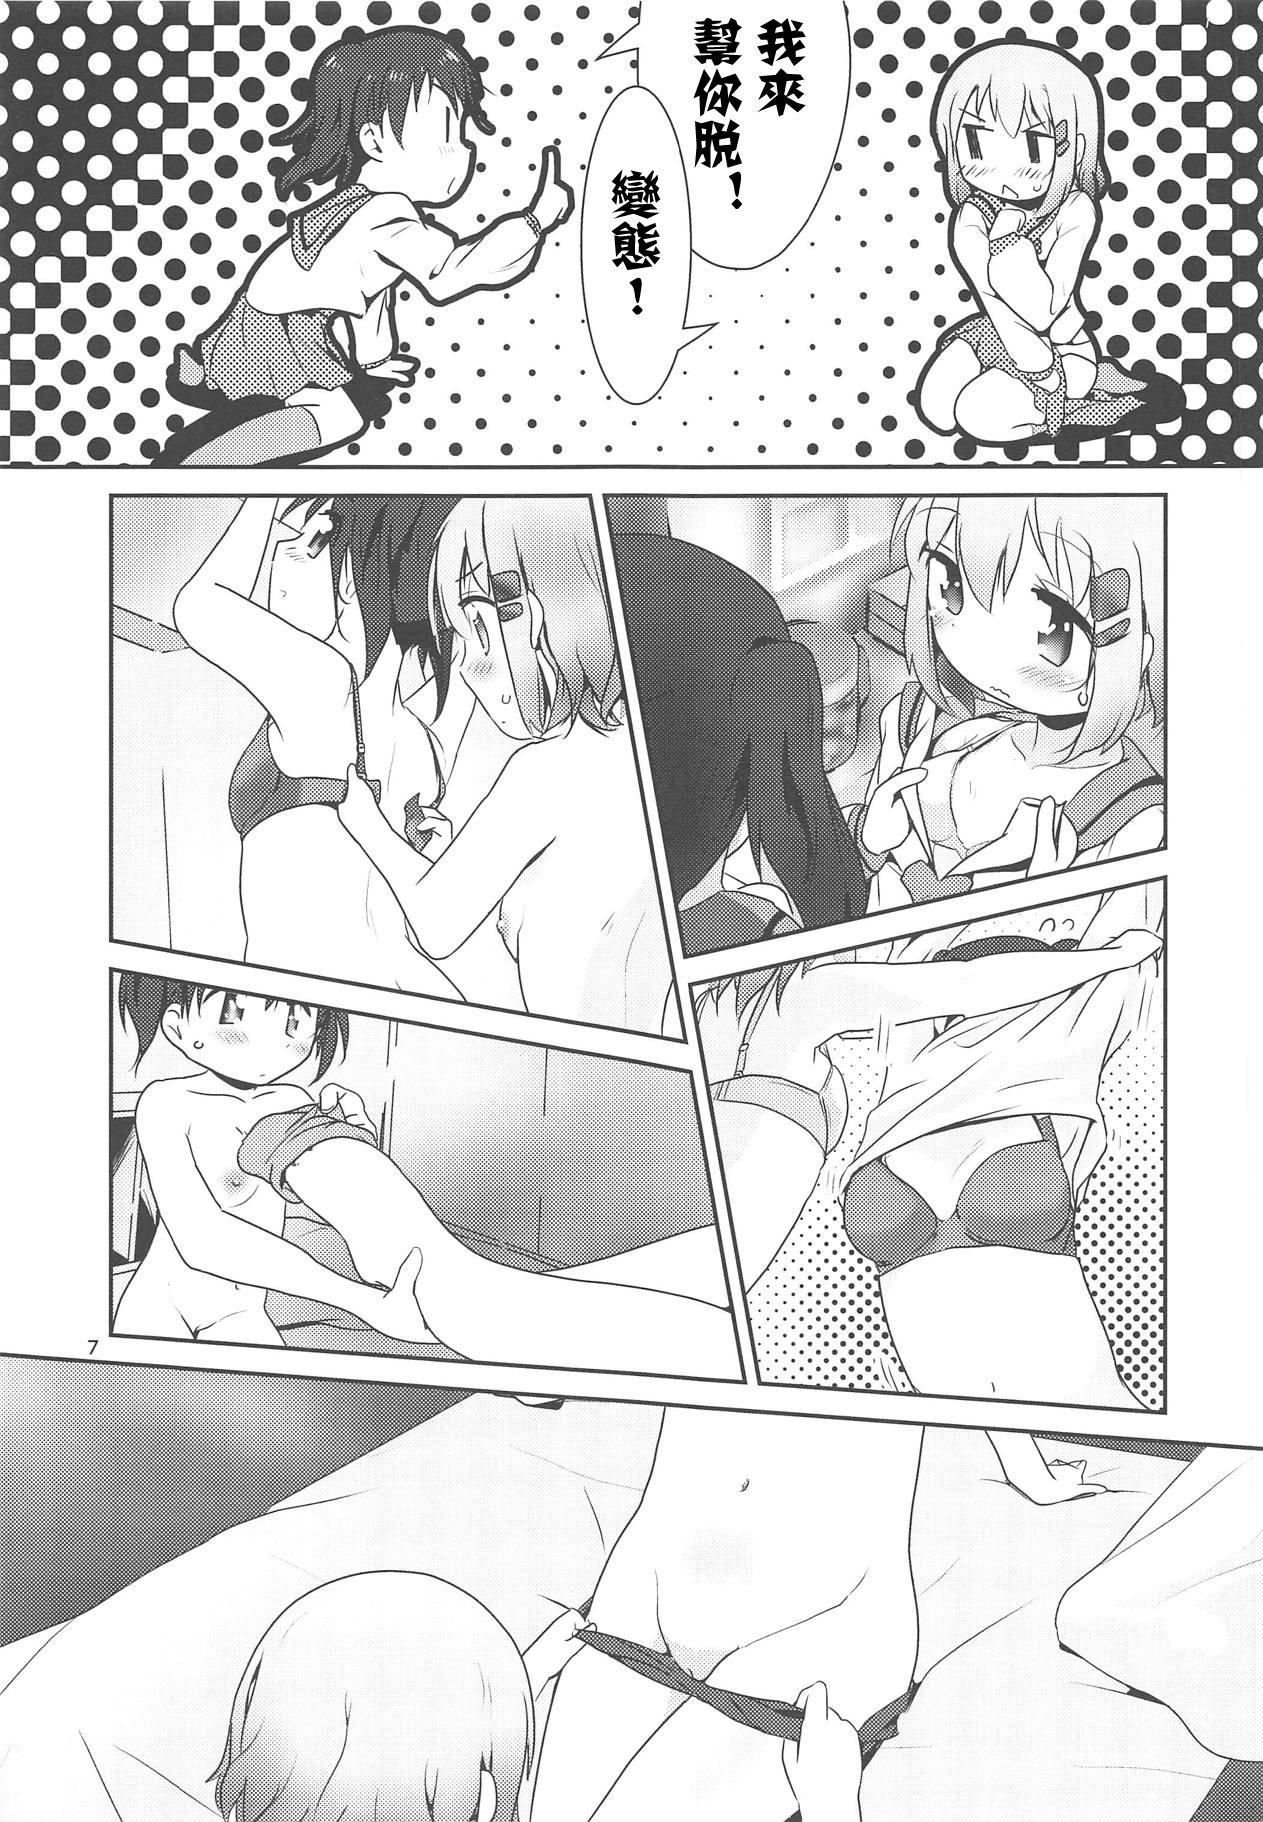 Ball Licking AoHina Yurix - Yama no susume Story - Page 8